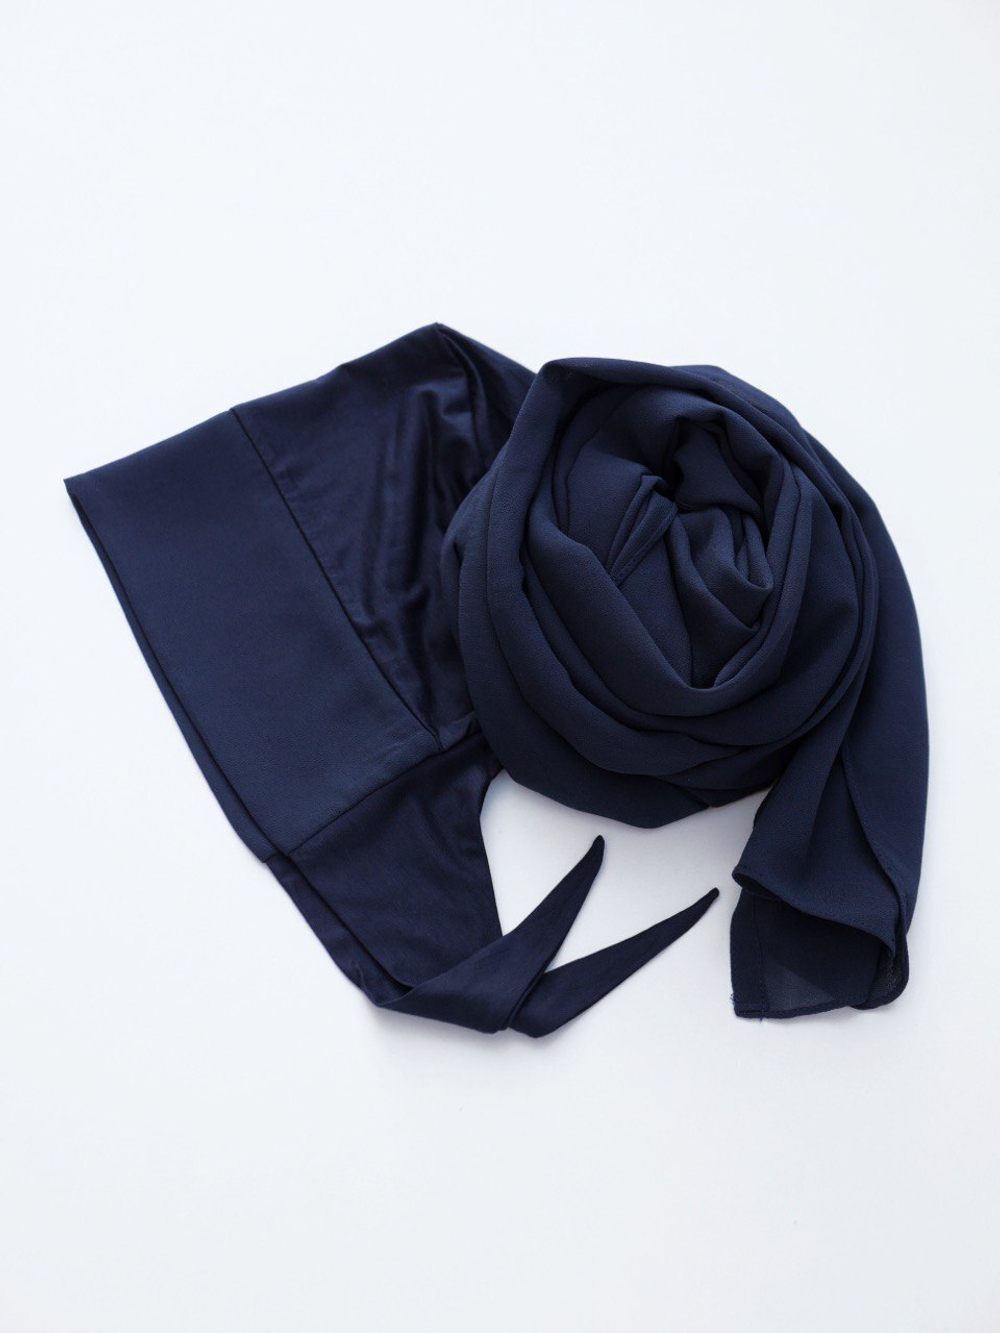 хиджаб комплект темно-синий